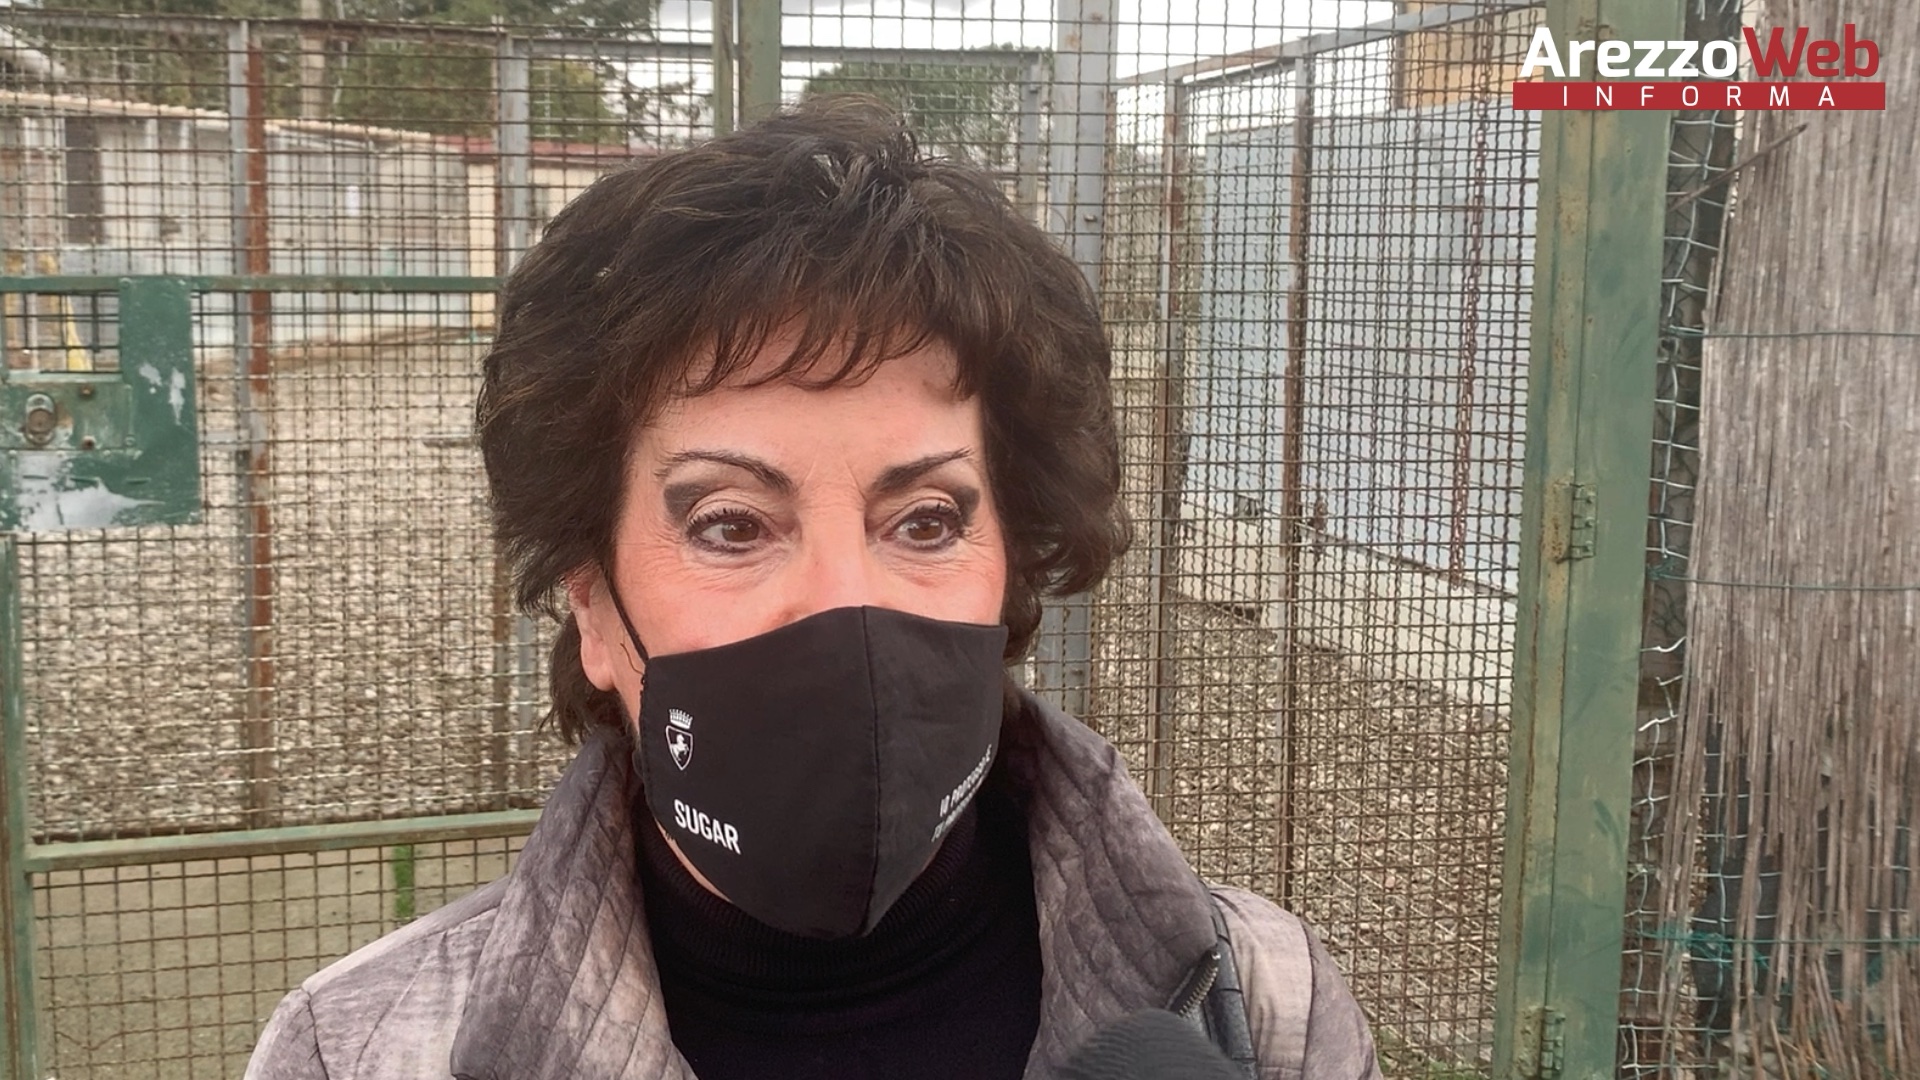 Giovanna Carlettini: “Arezzo attenta ai bisogni degli animali”